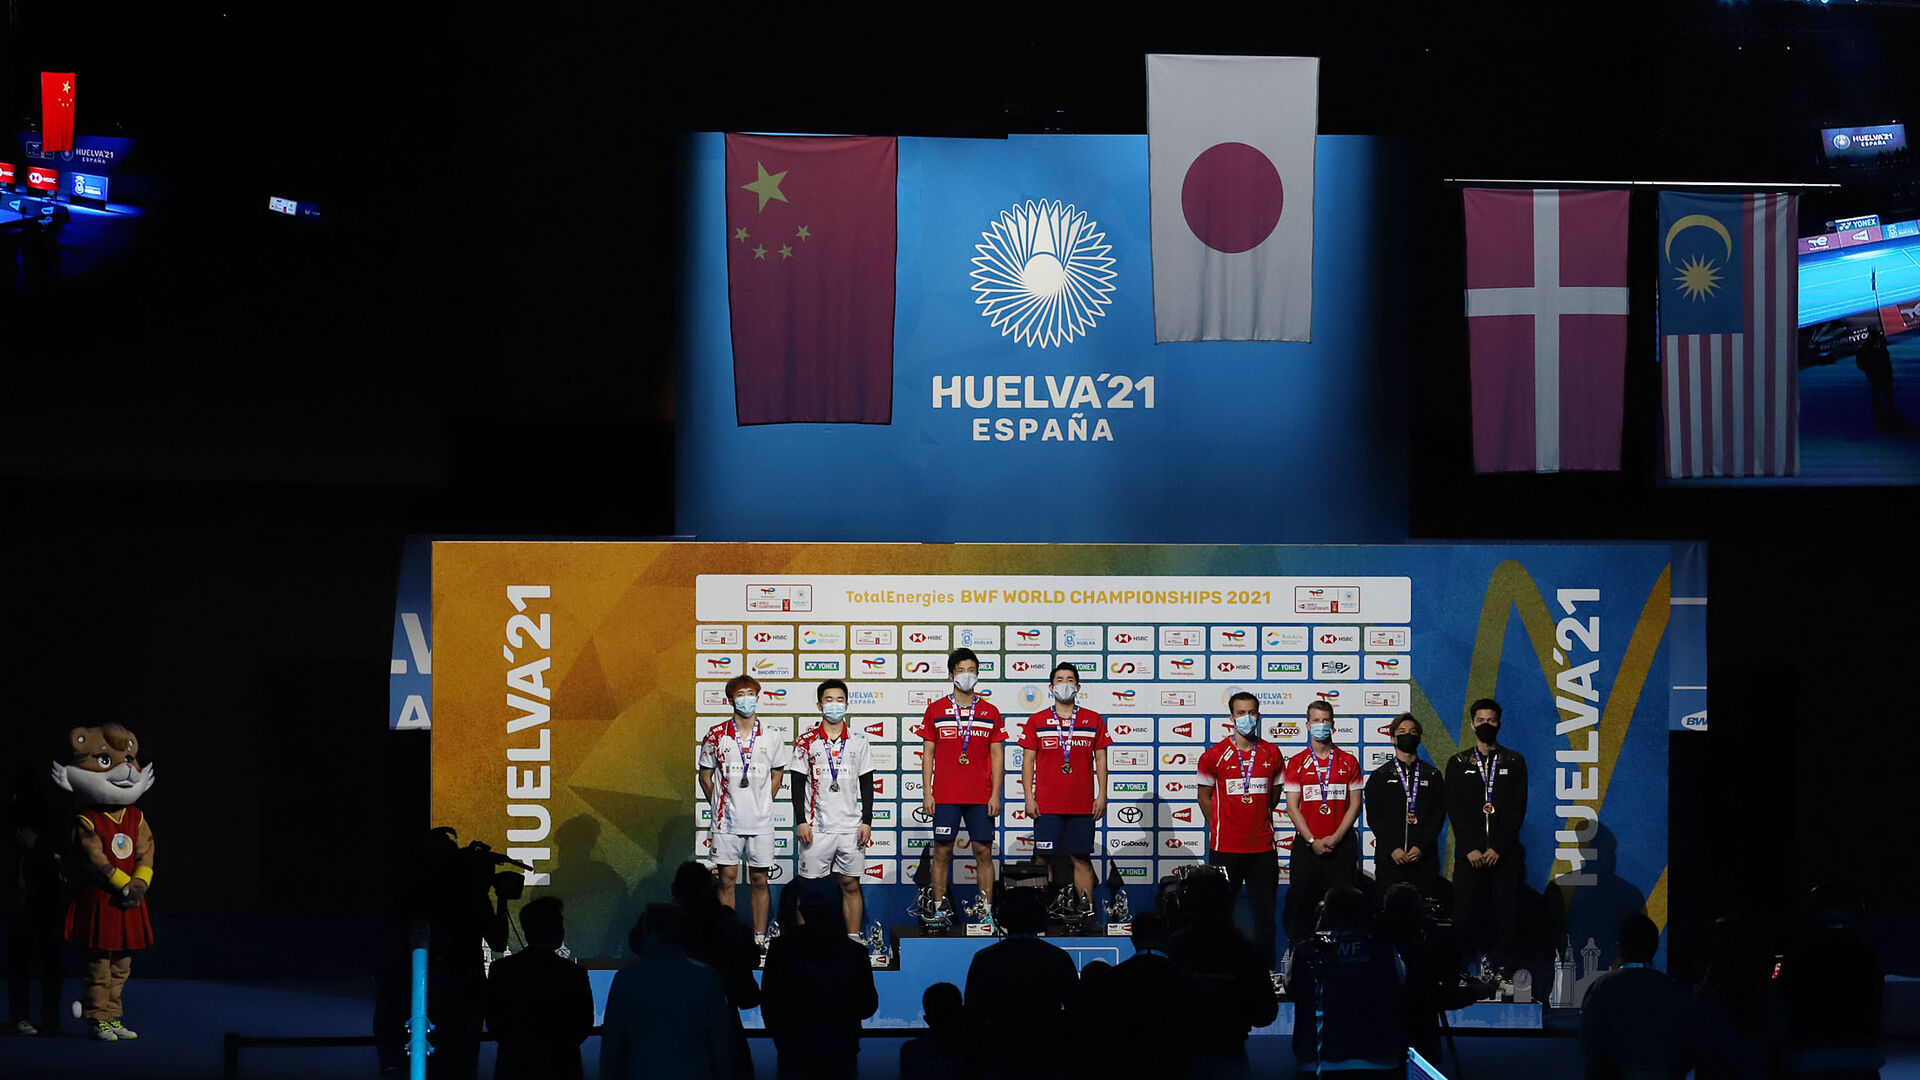 Huelva 2021: final doble masculino HOKI,KOBAYASHI-HE Ji Ting,TAN Qiang. Mundial de B&aacute;dminton Huelva&acute;21